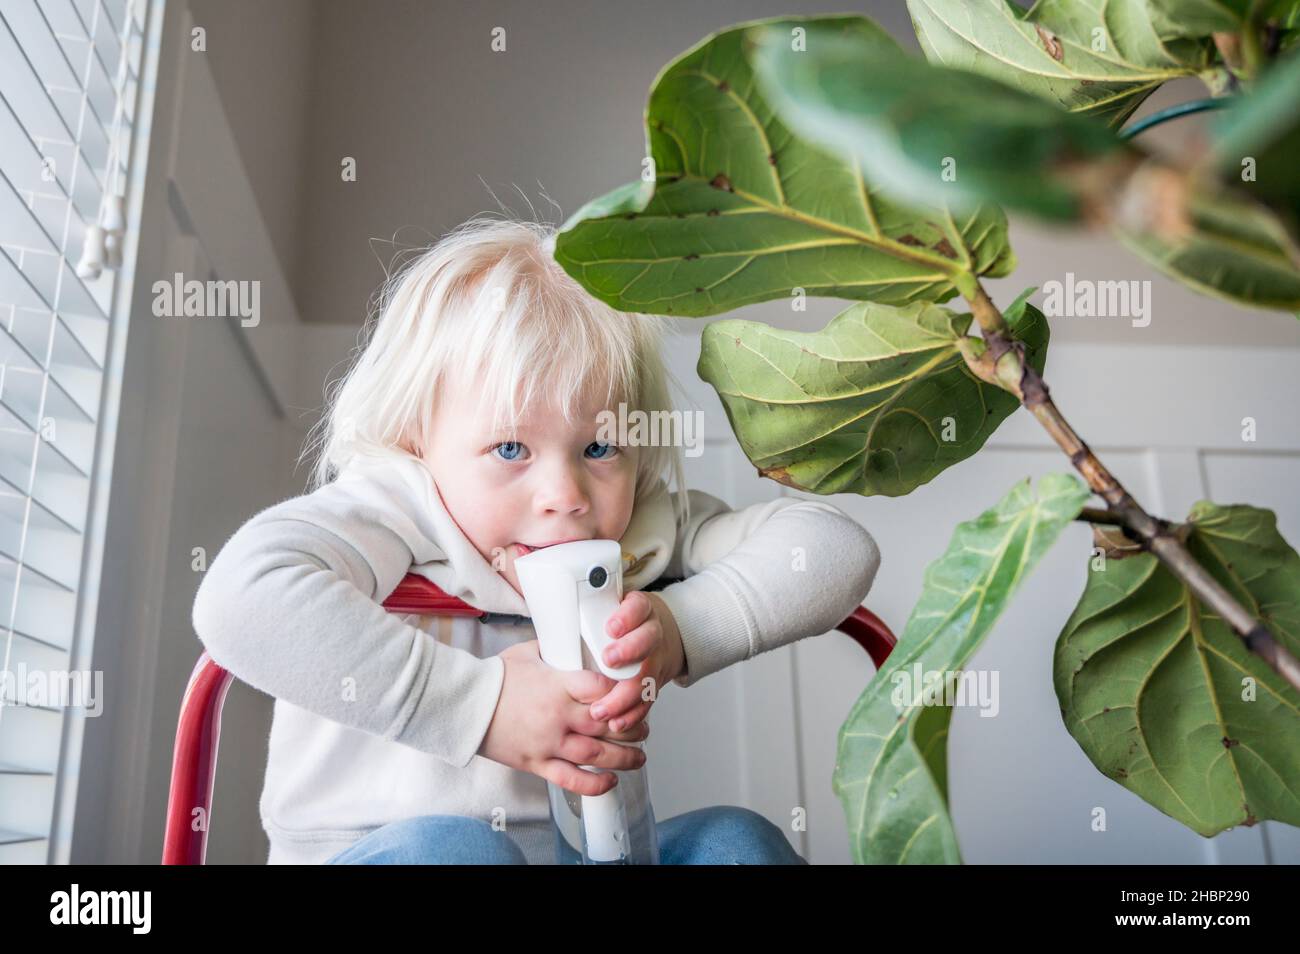 Mädchen hält Wassersprüher neben Geige Blatt Feigenpflanze Stockfoto